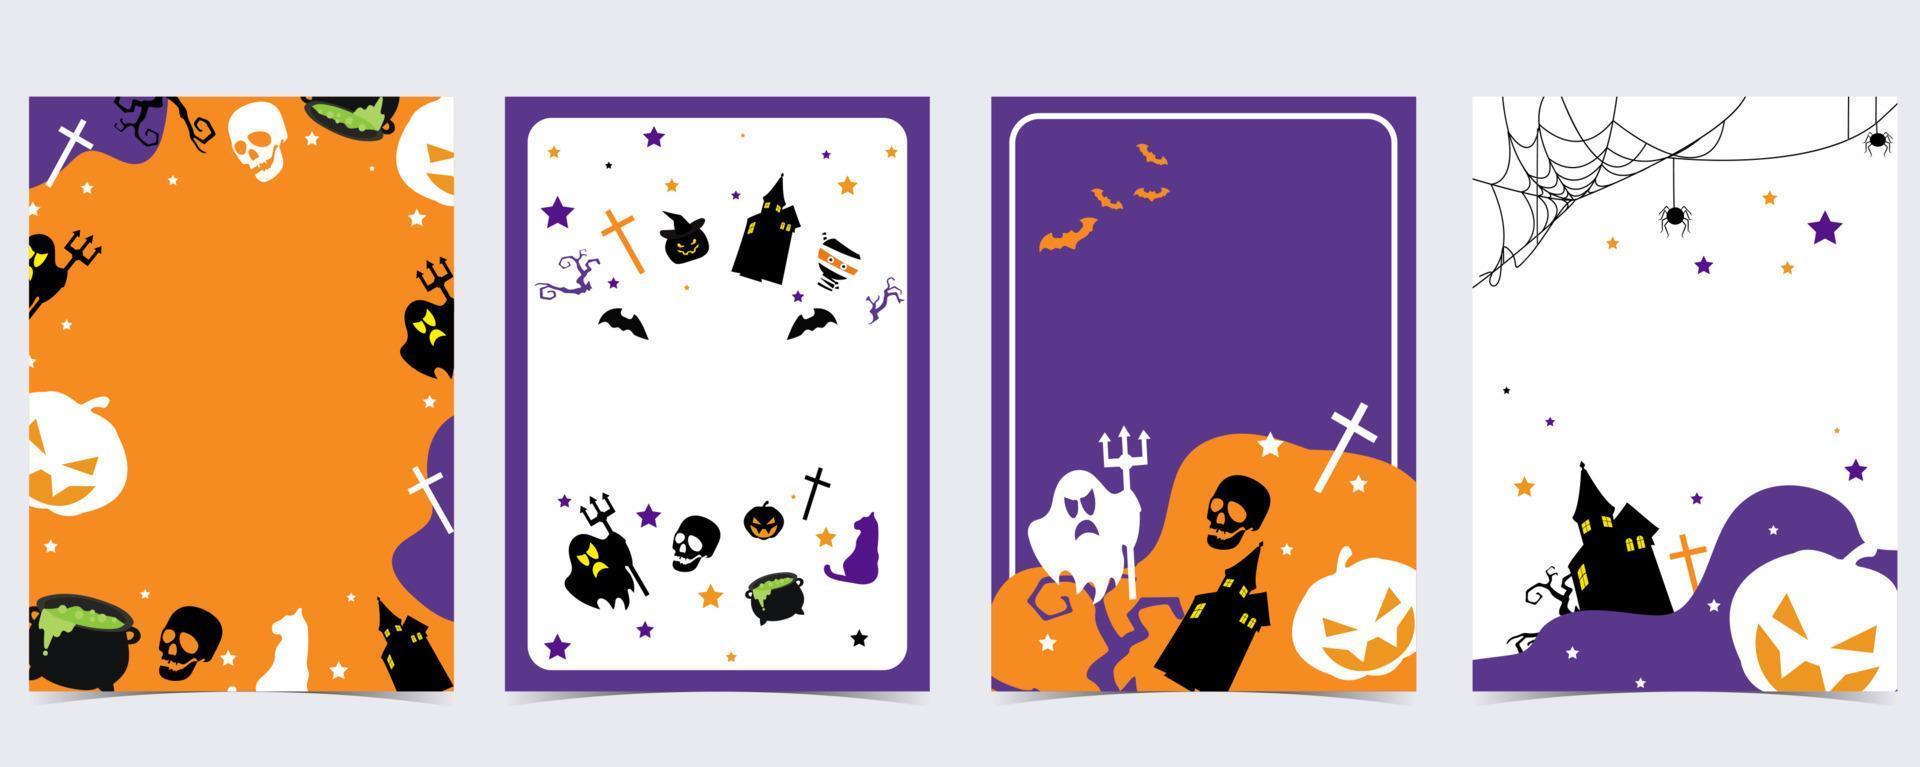 fiesta postal de halloween con web, araña, murciélago, calabaza, casa, esqueleto vector